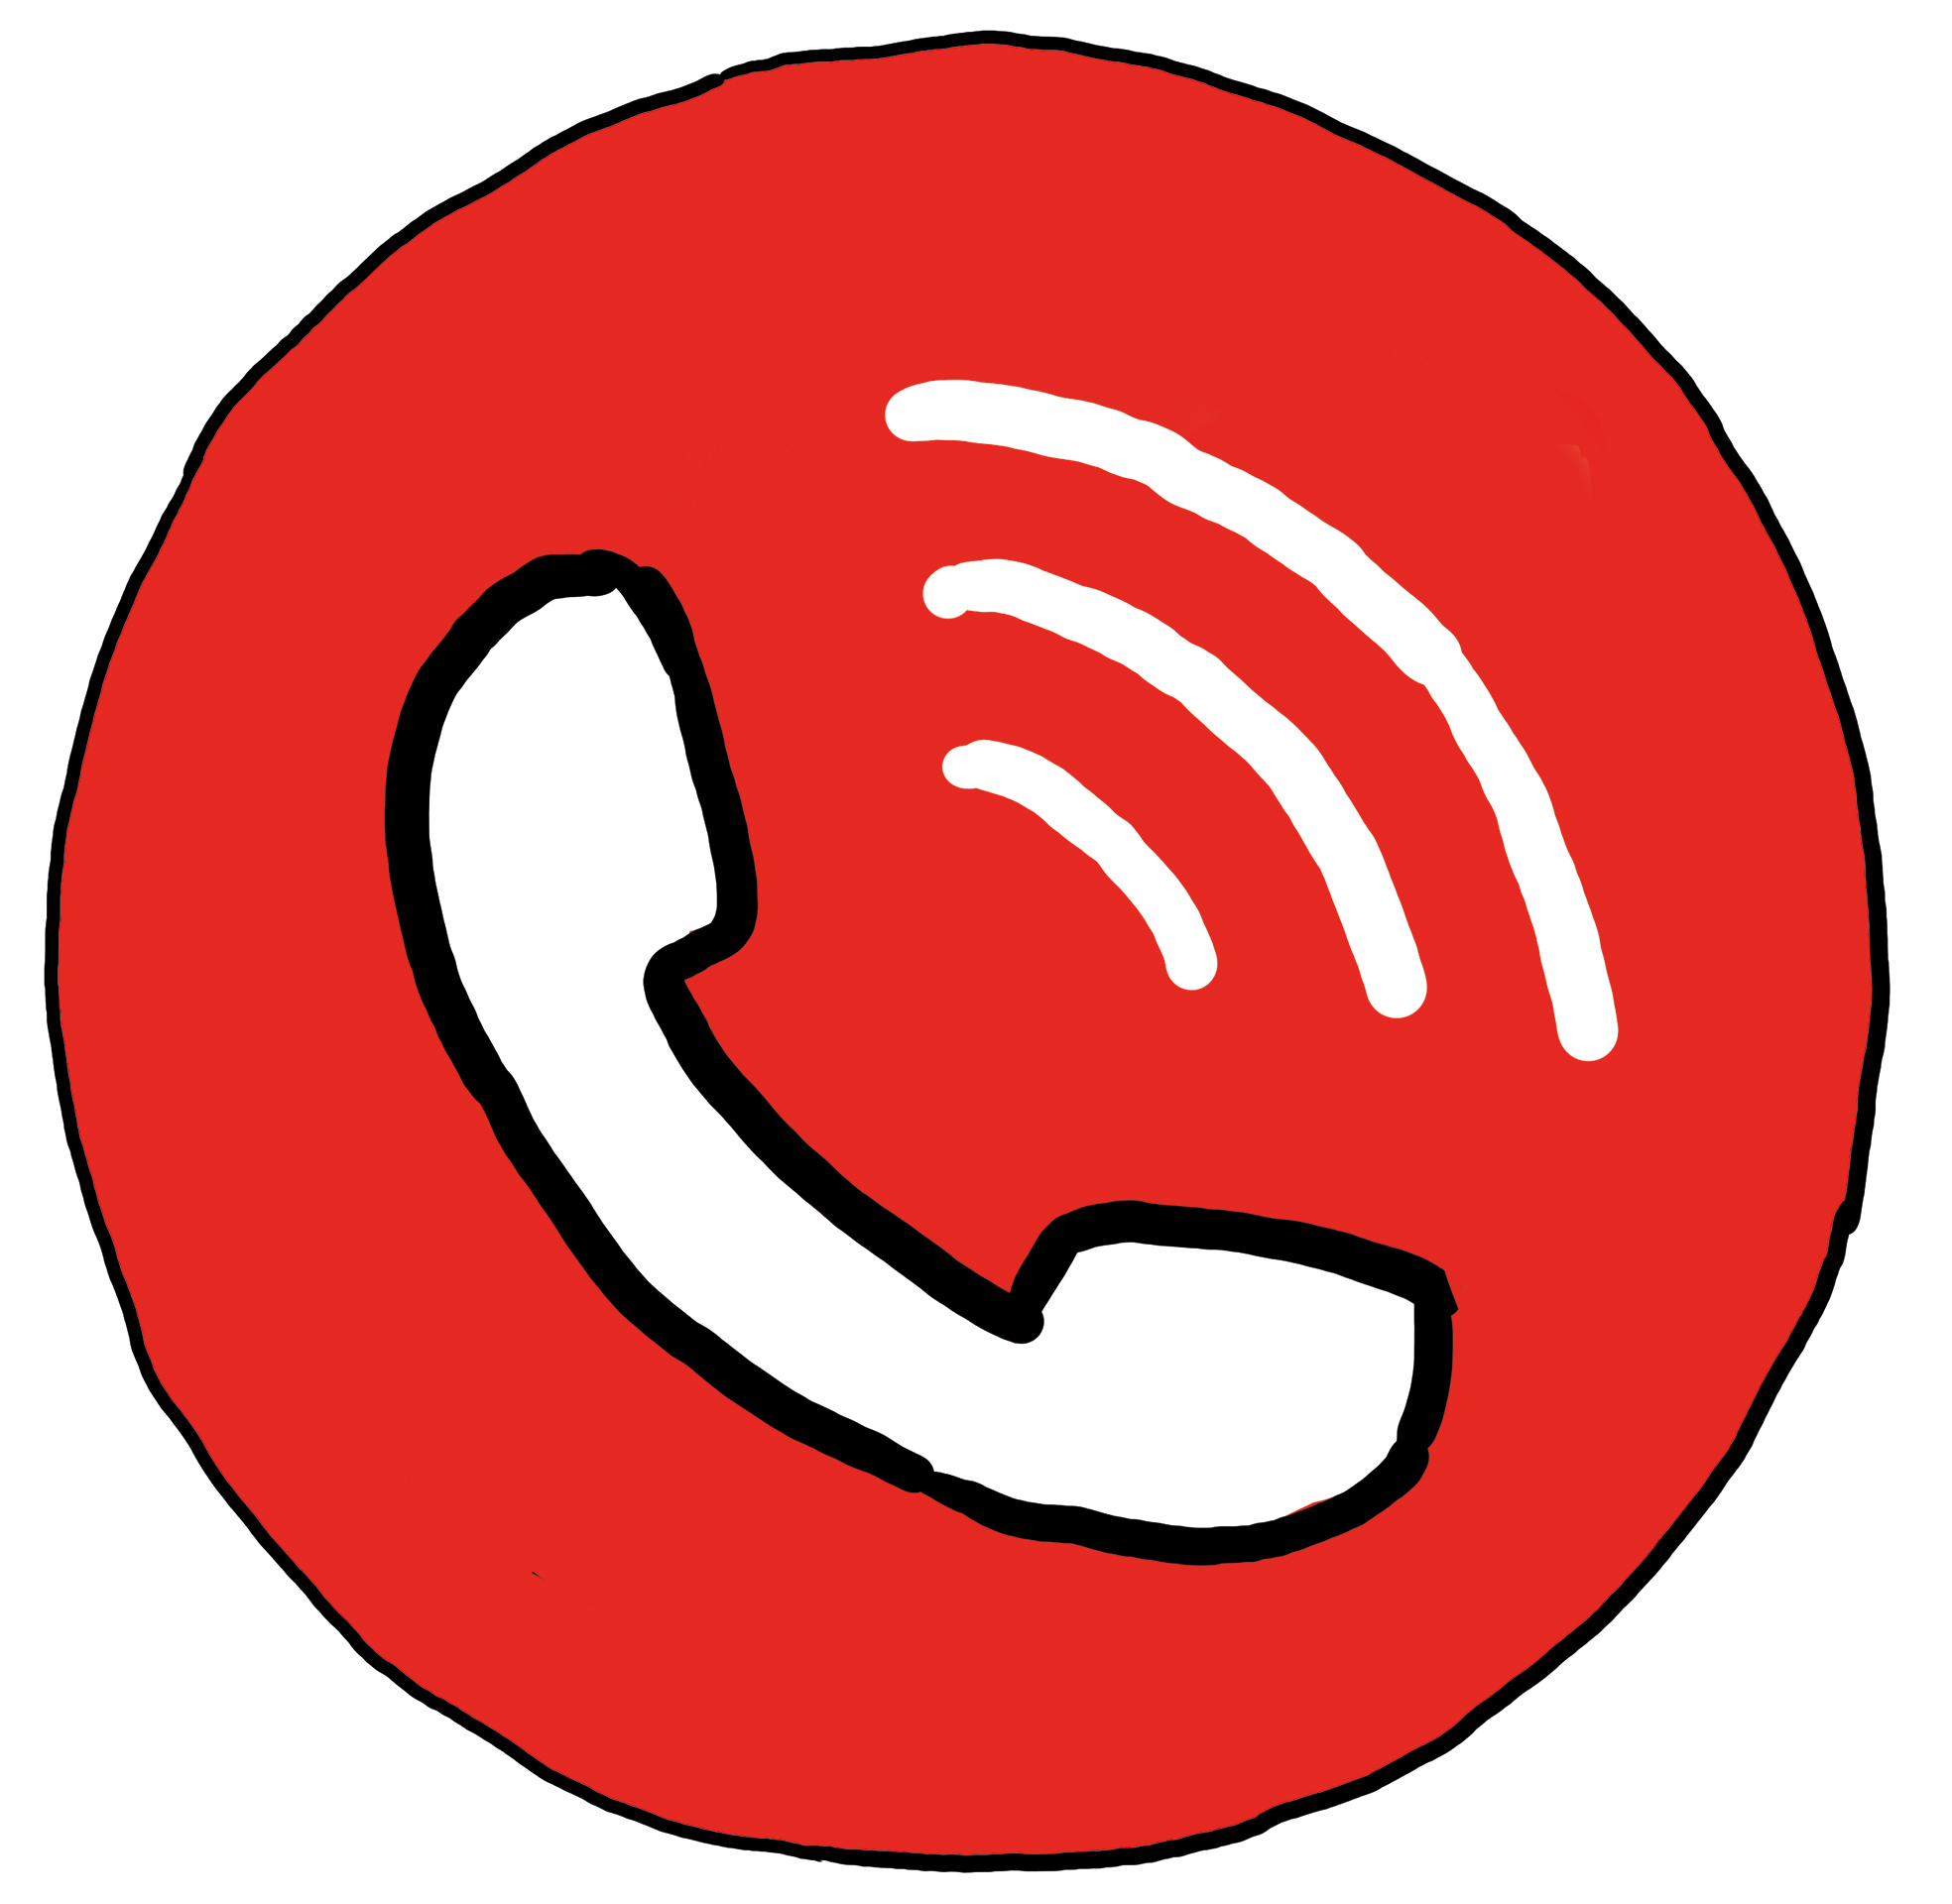 Ein weißer Telefonhörer auf einem roten Kreis - Symbol für telefonieren